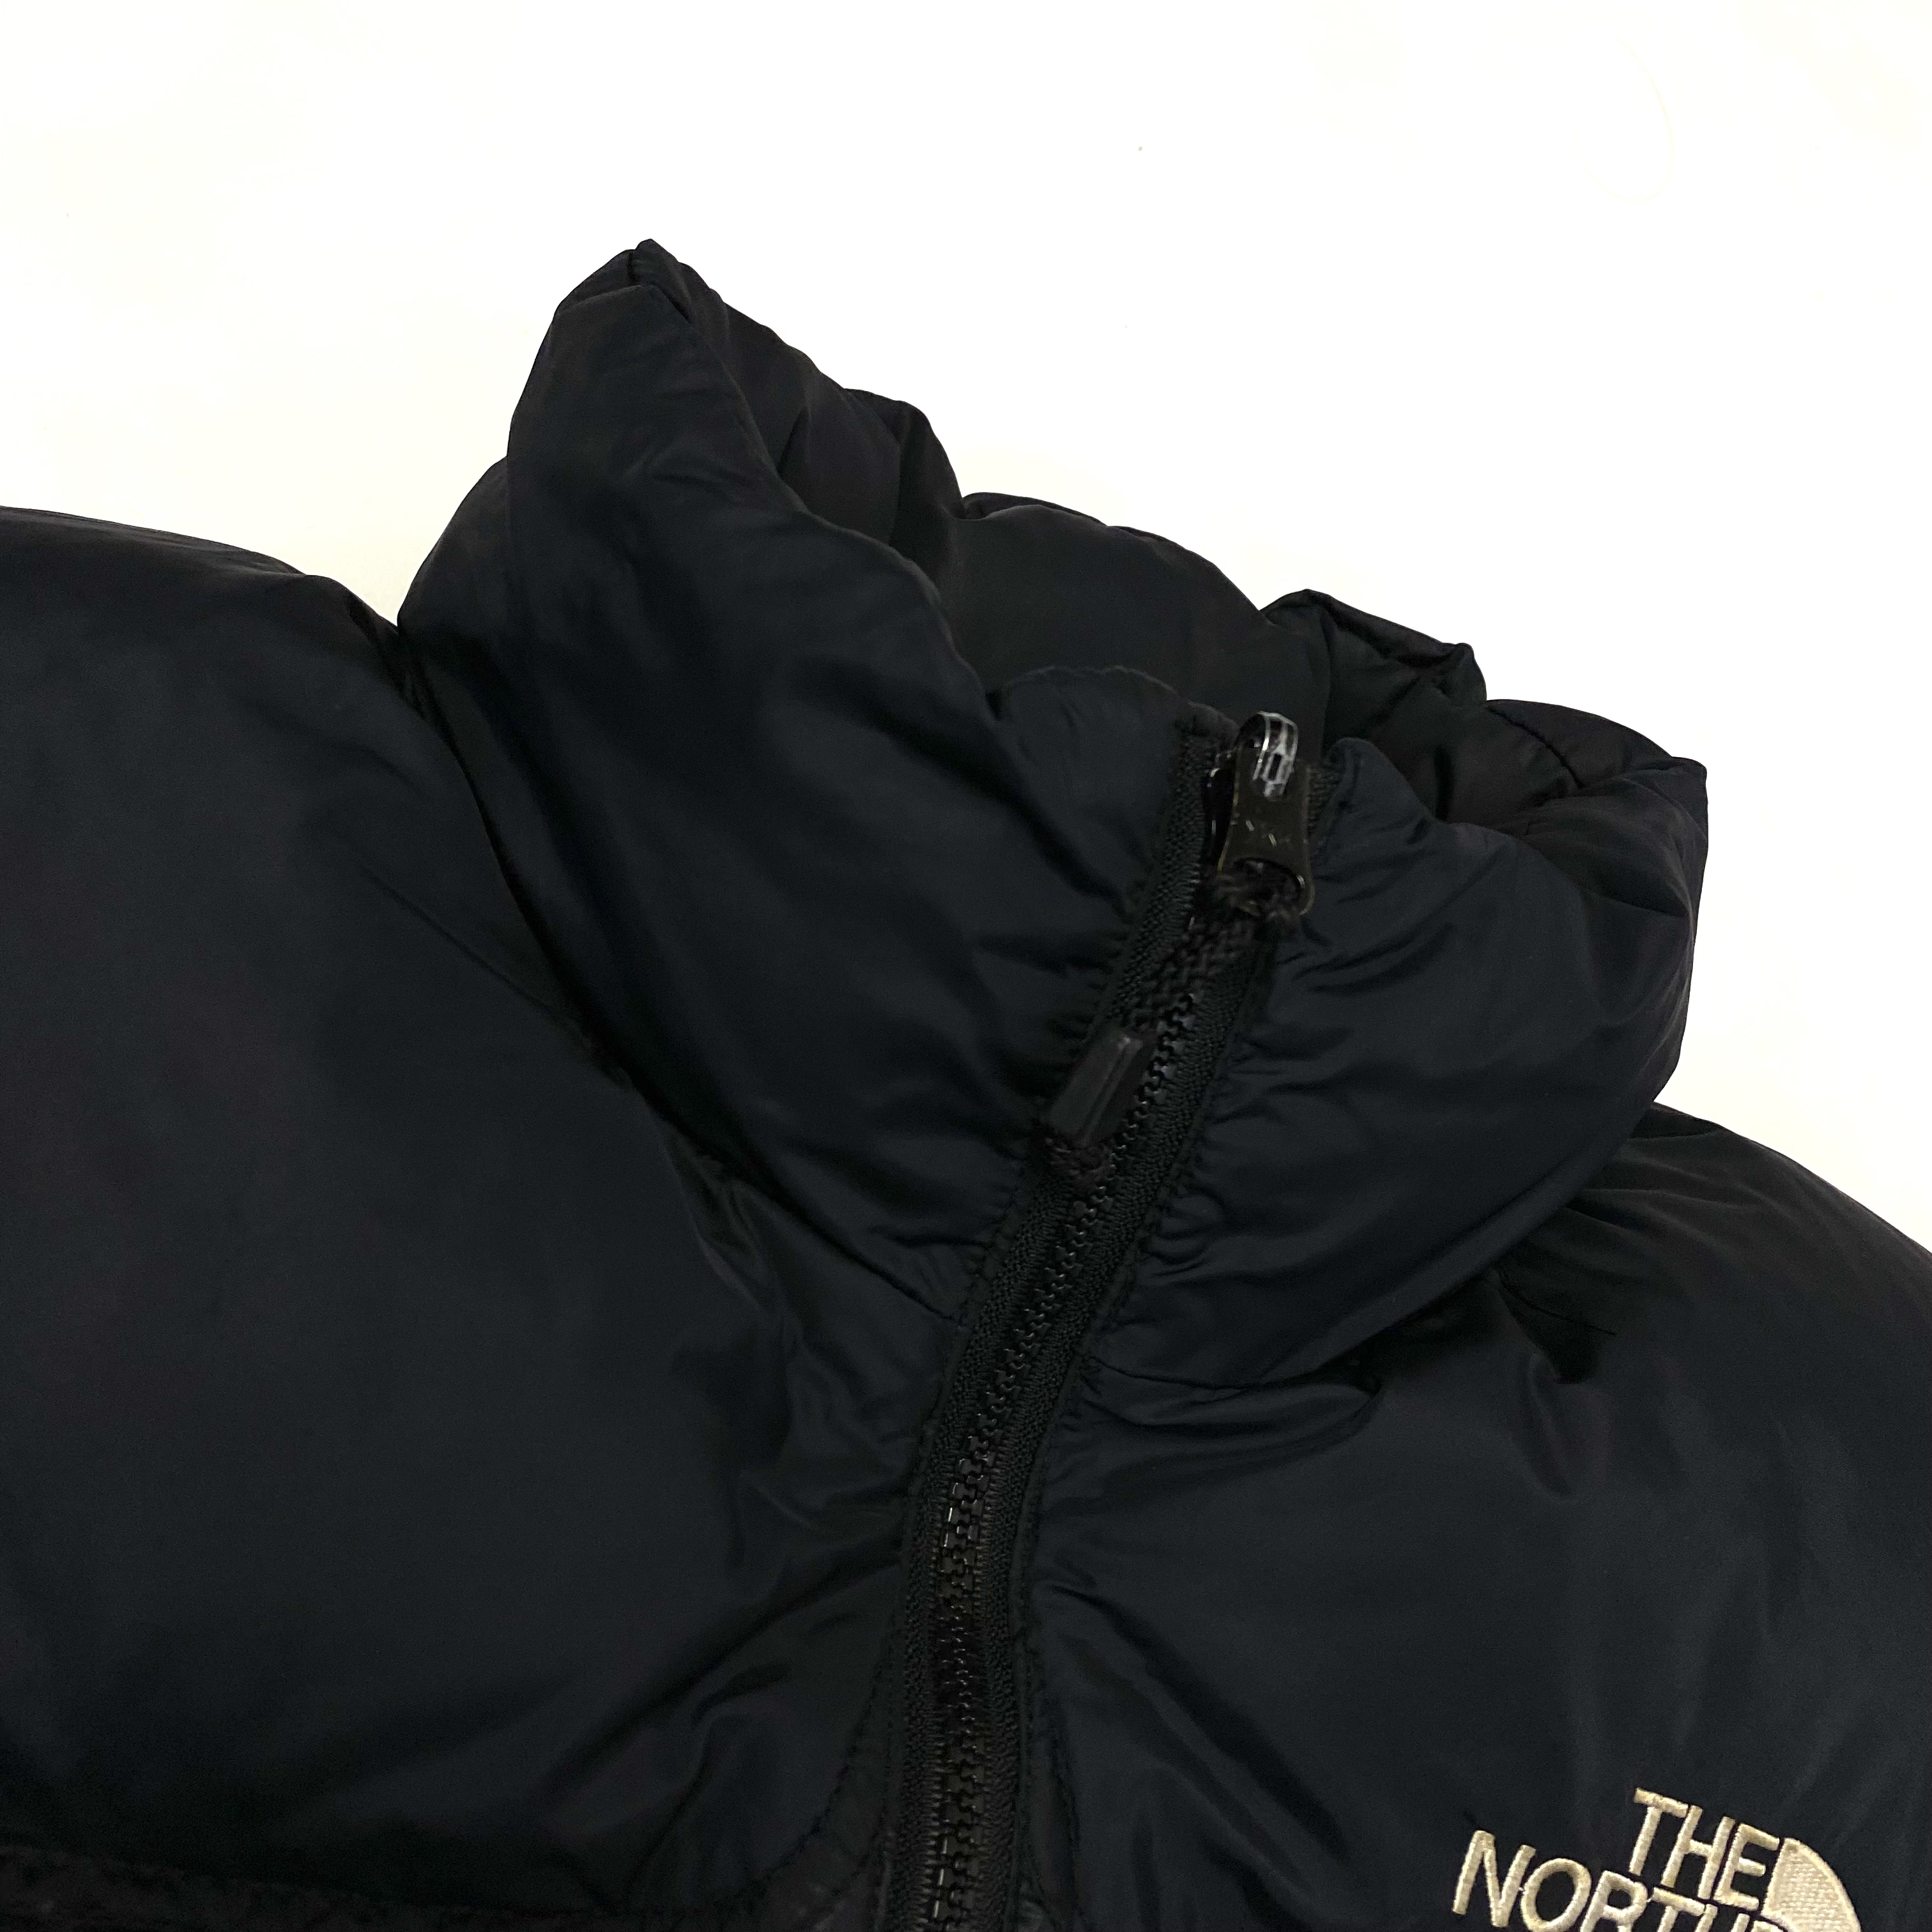 【90’s】THE NORTH FACE ノースフェイス ヌプシジャケット ダウンジャケット 売れ筋の大人気